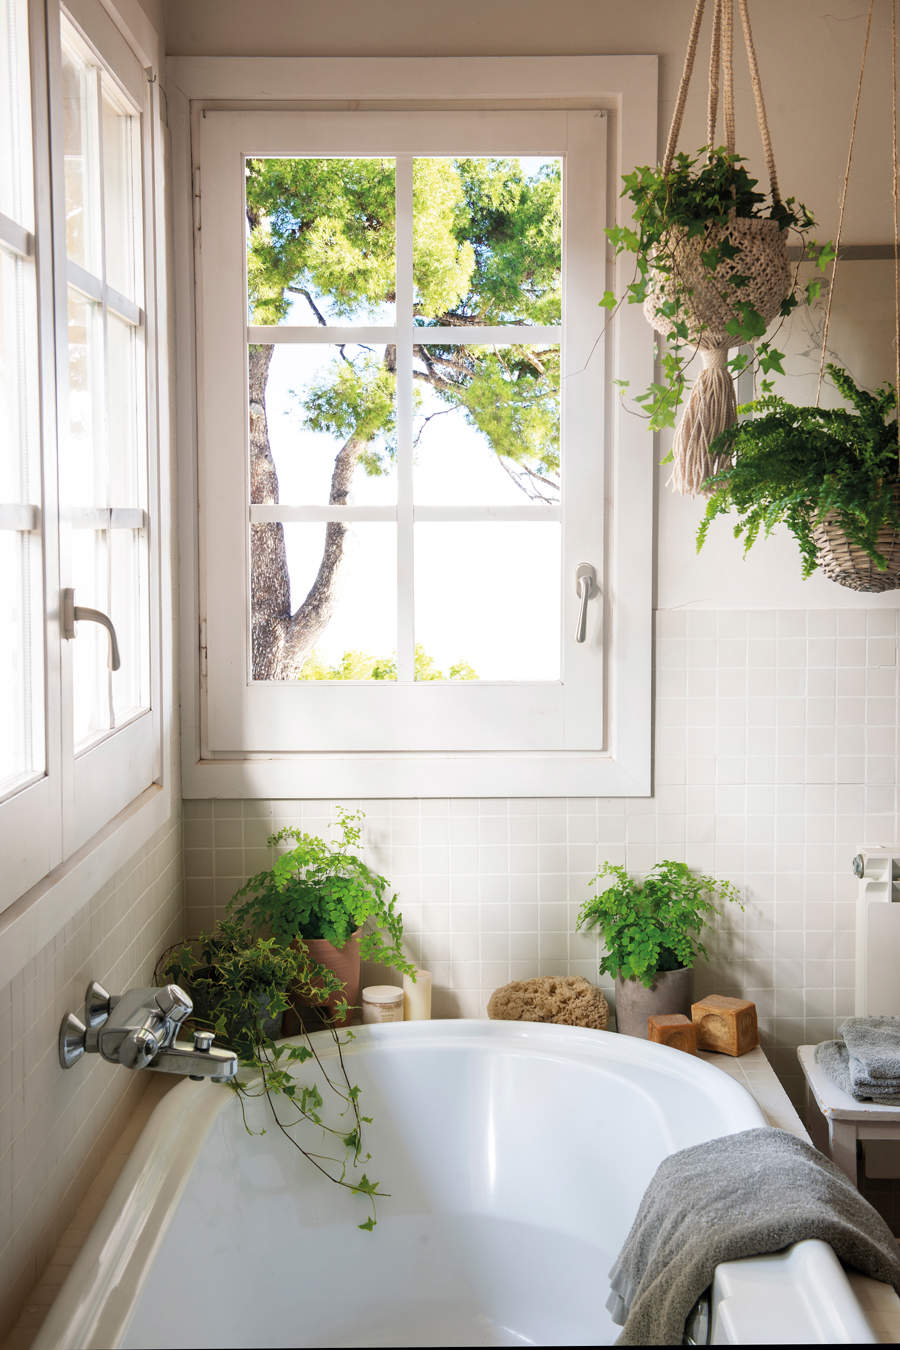 Baño, decorado con plantas.